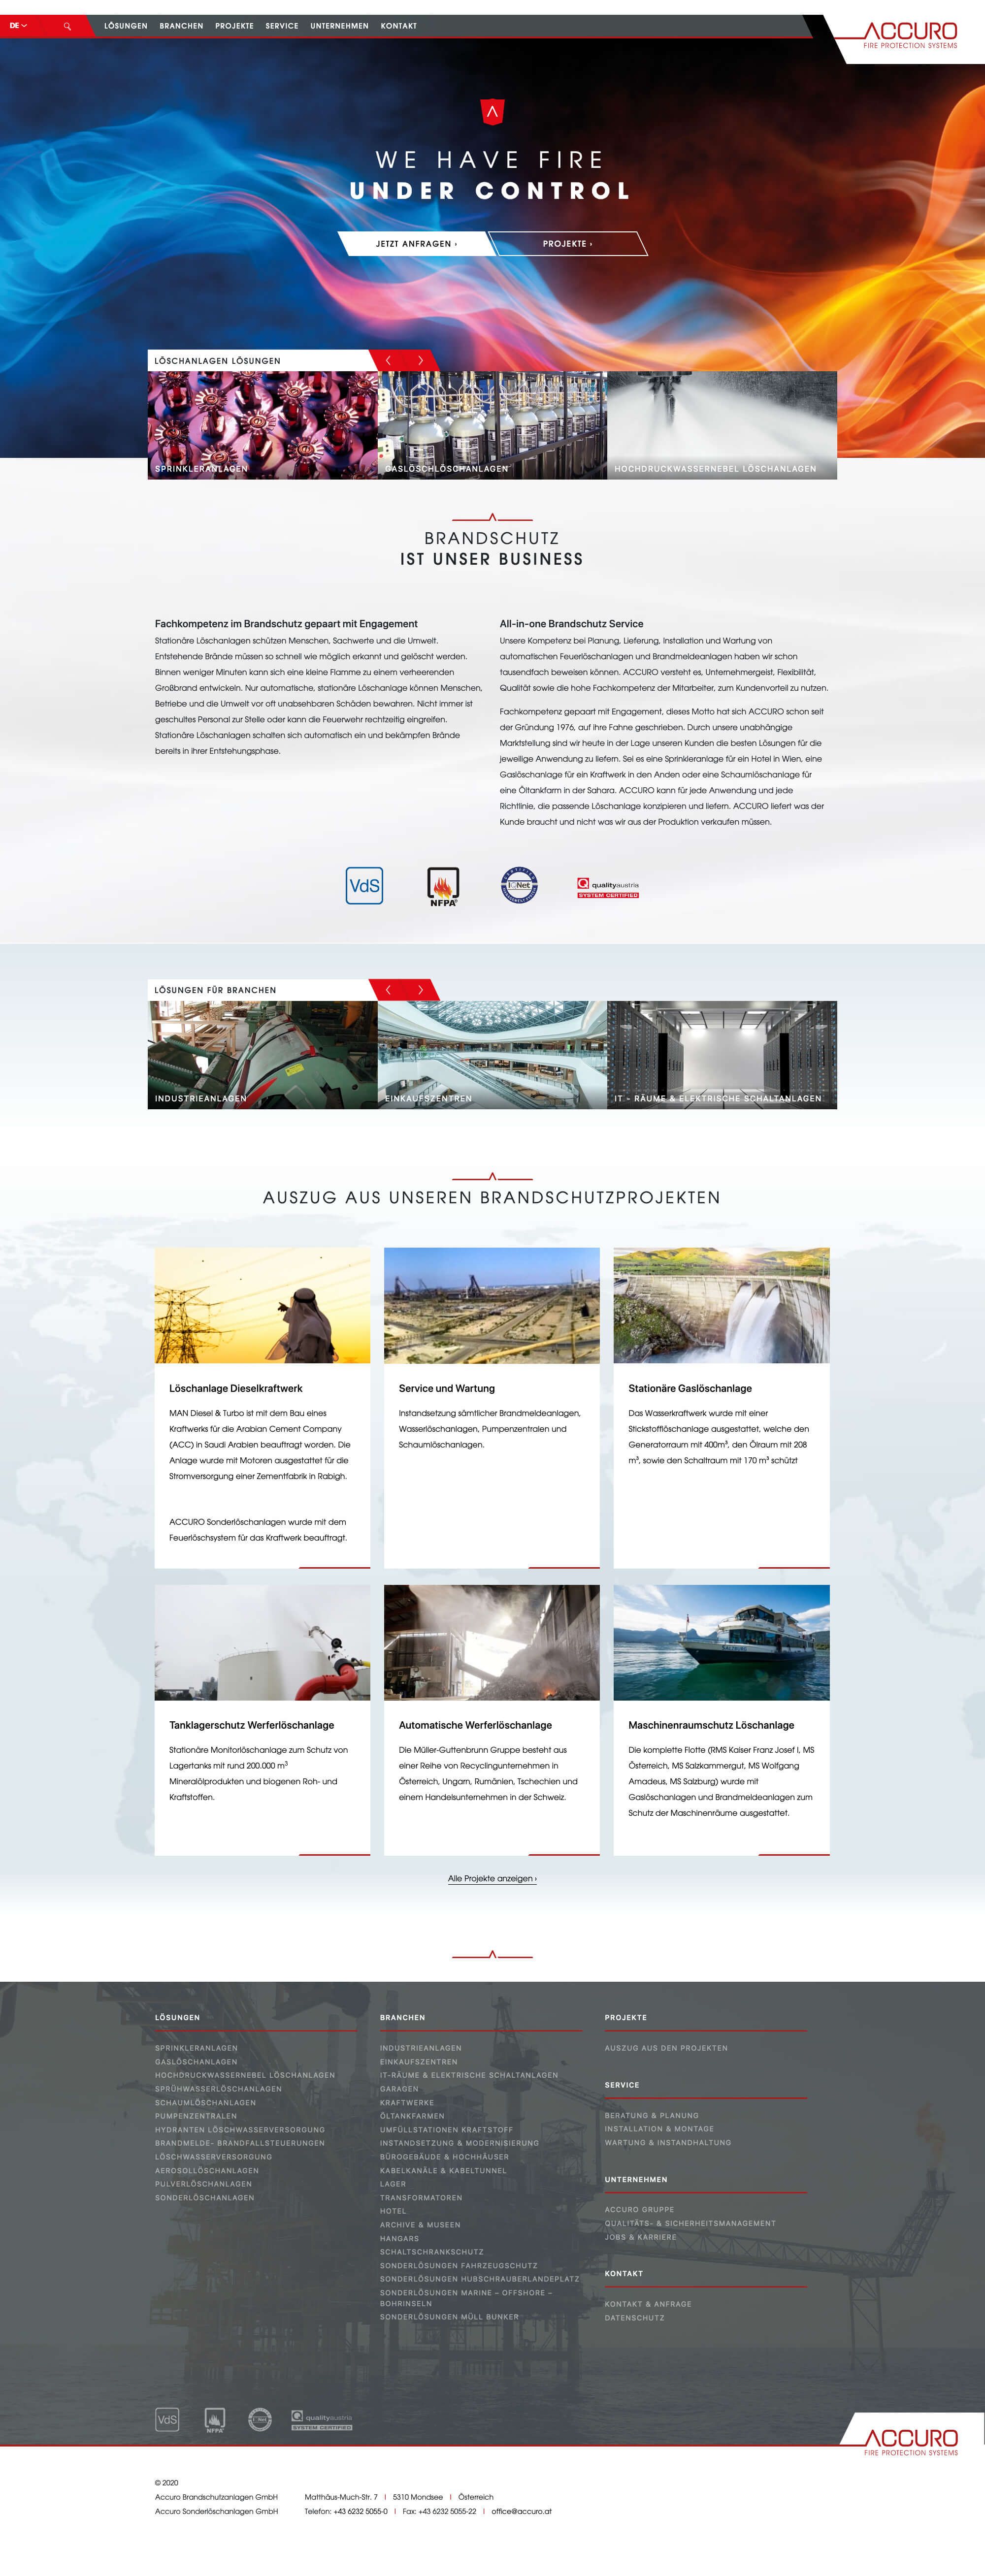 Website von Accuro Brandschutz- & Sonderlöschanlagen